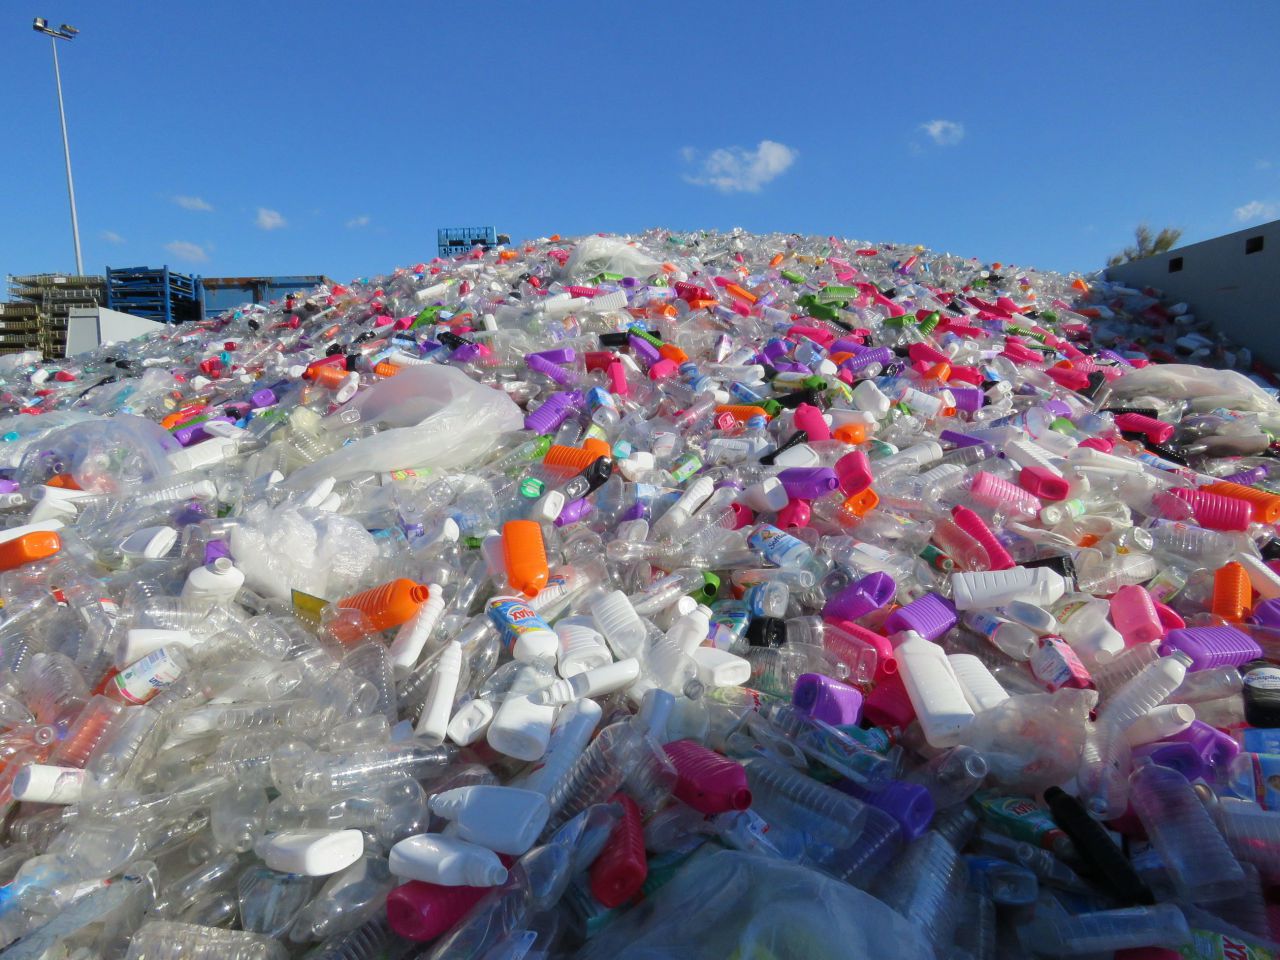 Environnement : 8,3 milliards de tonnes de plastique, ça représente quoi ? 